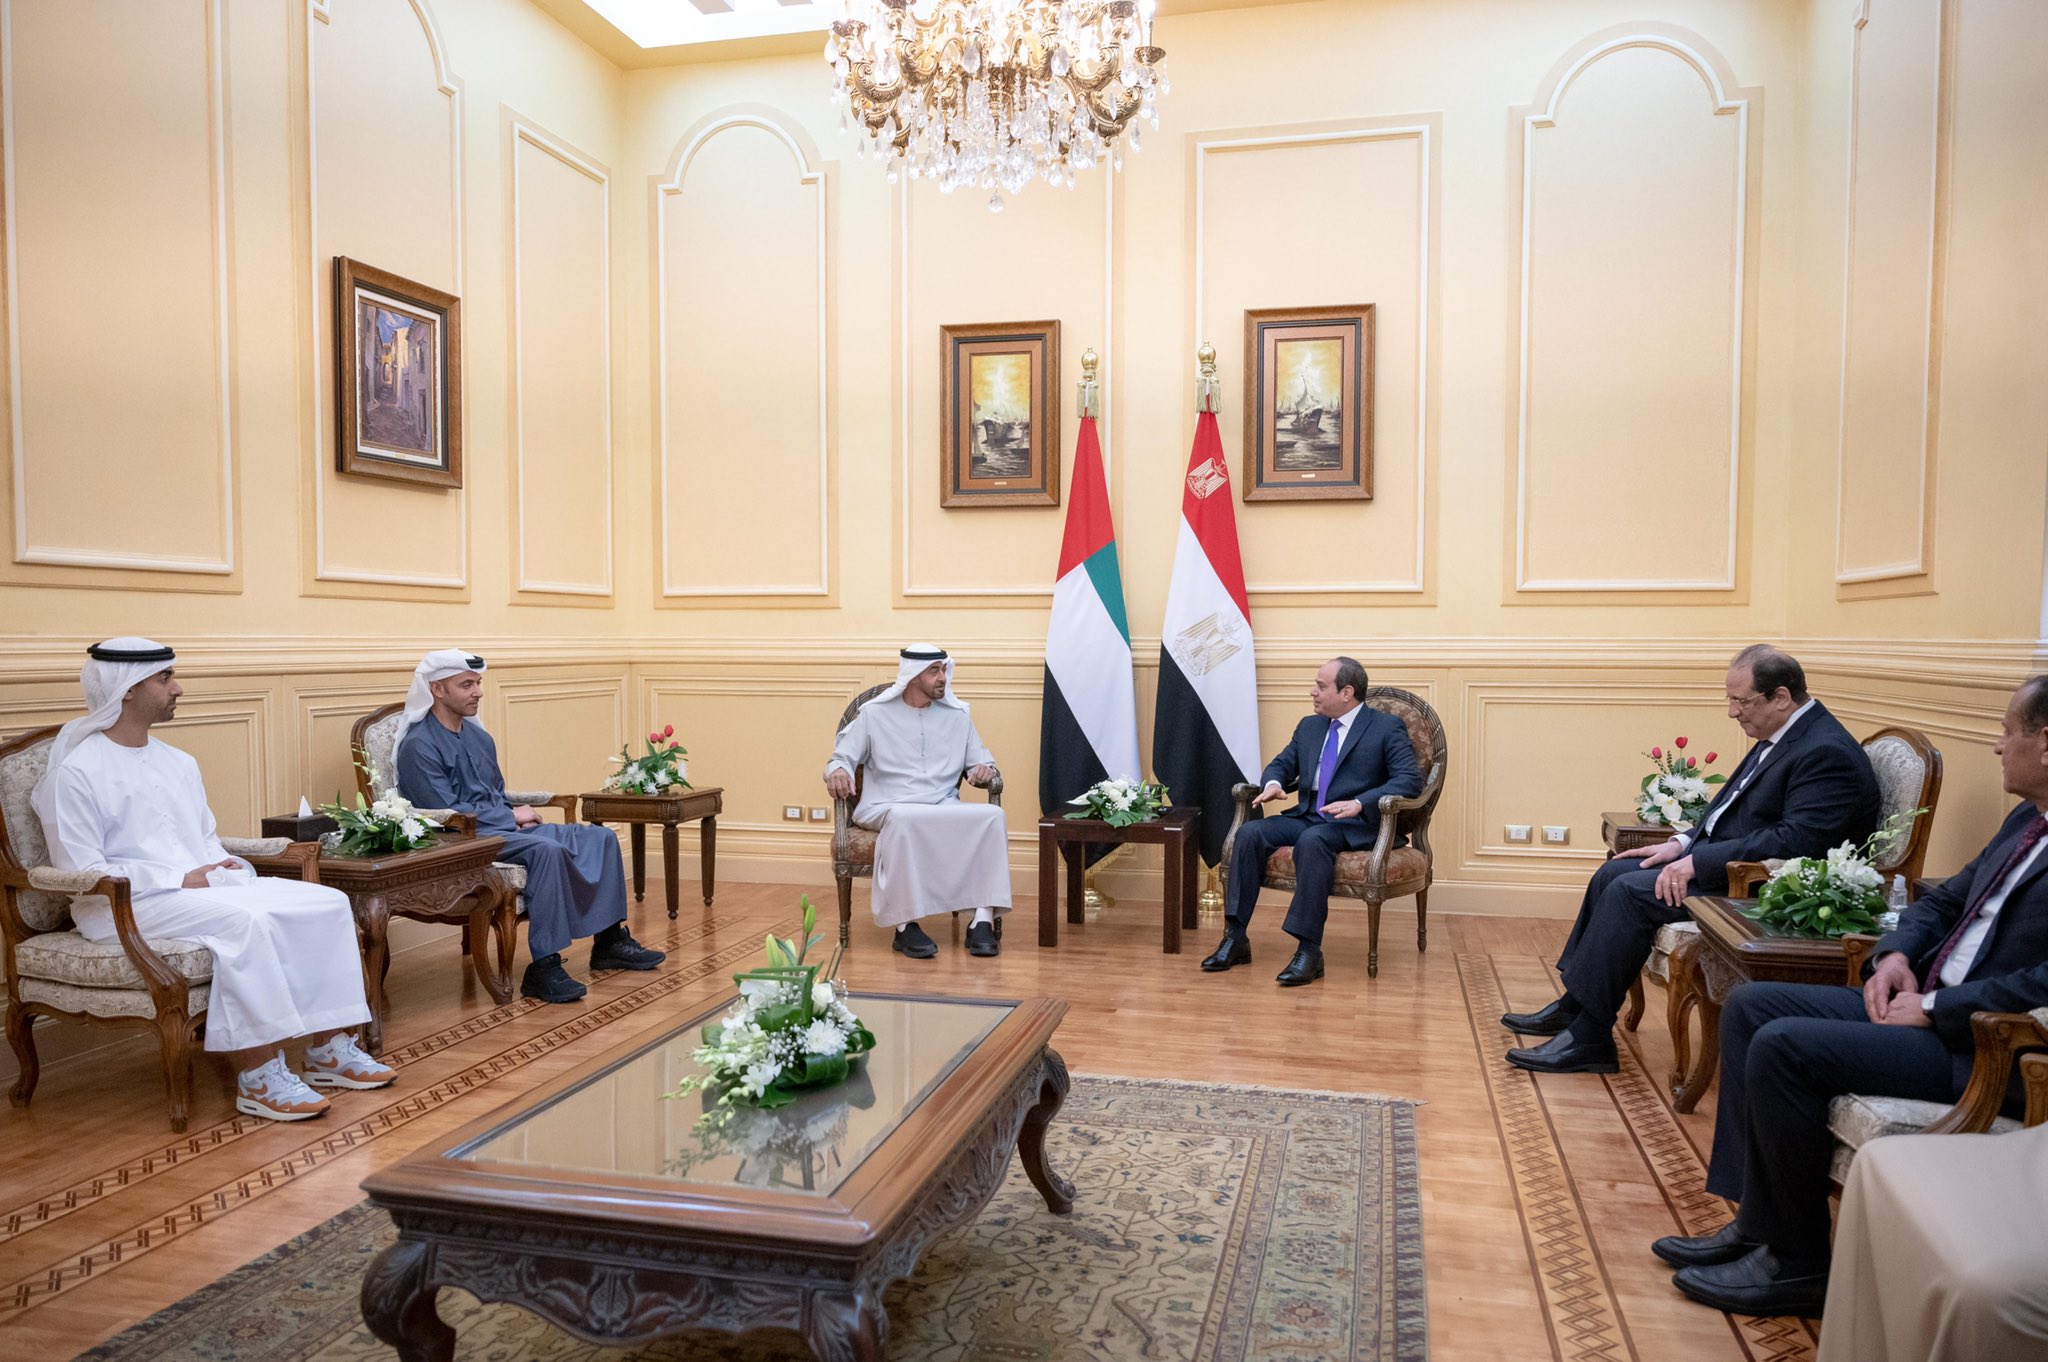 יורש העצר של איחוד האמירויות בפגישה עם הנשיא המצרי